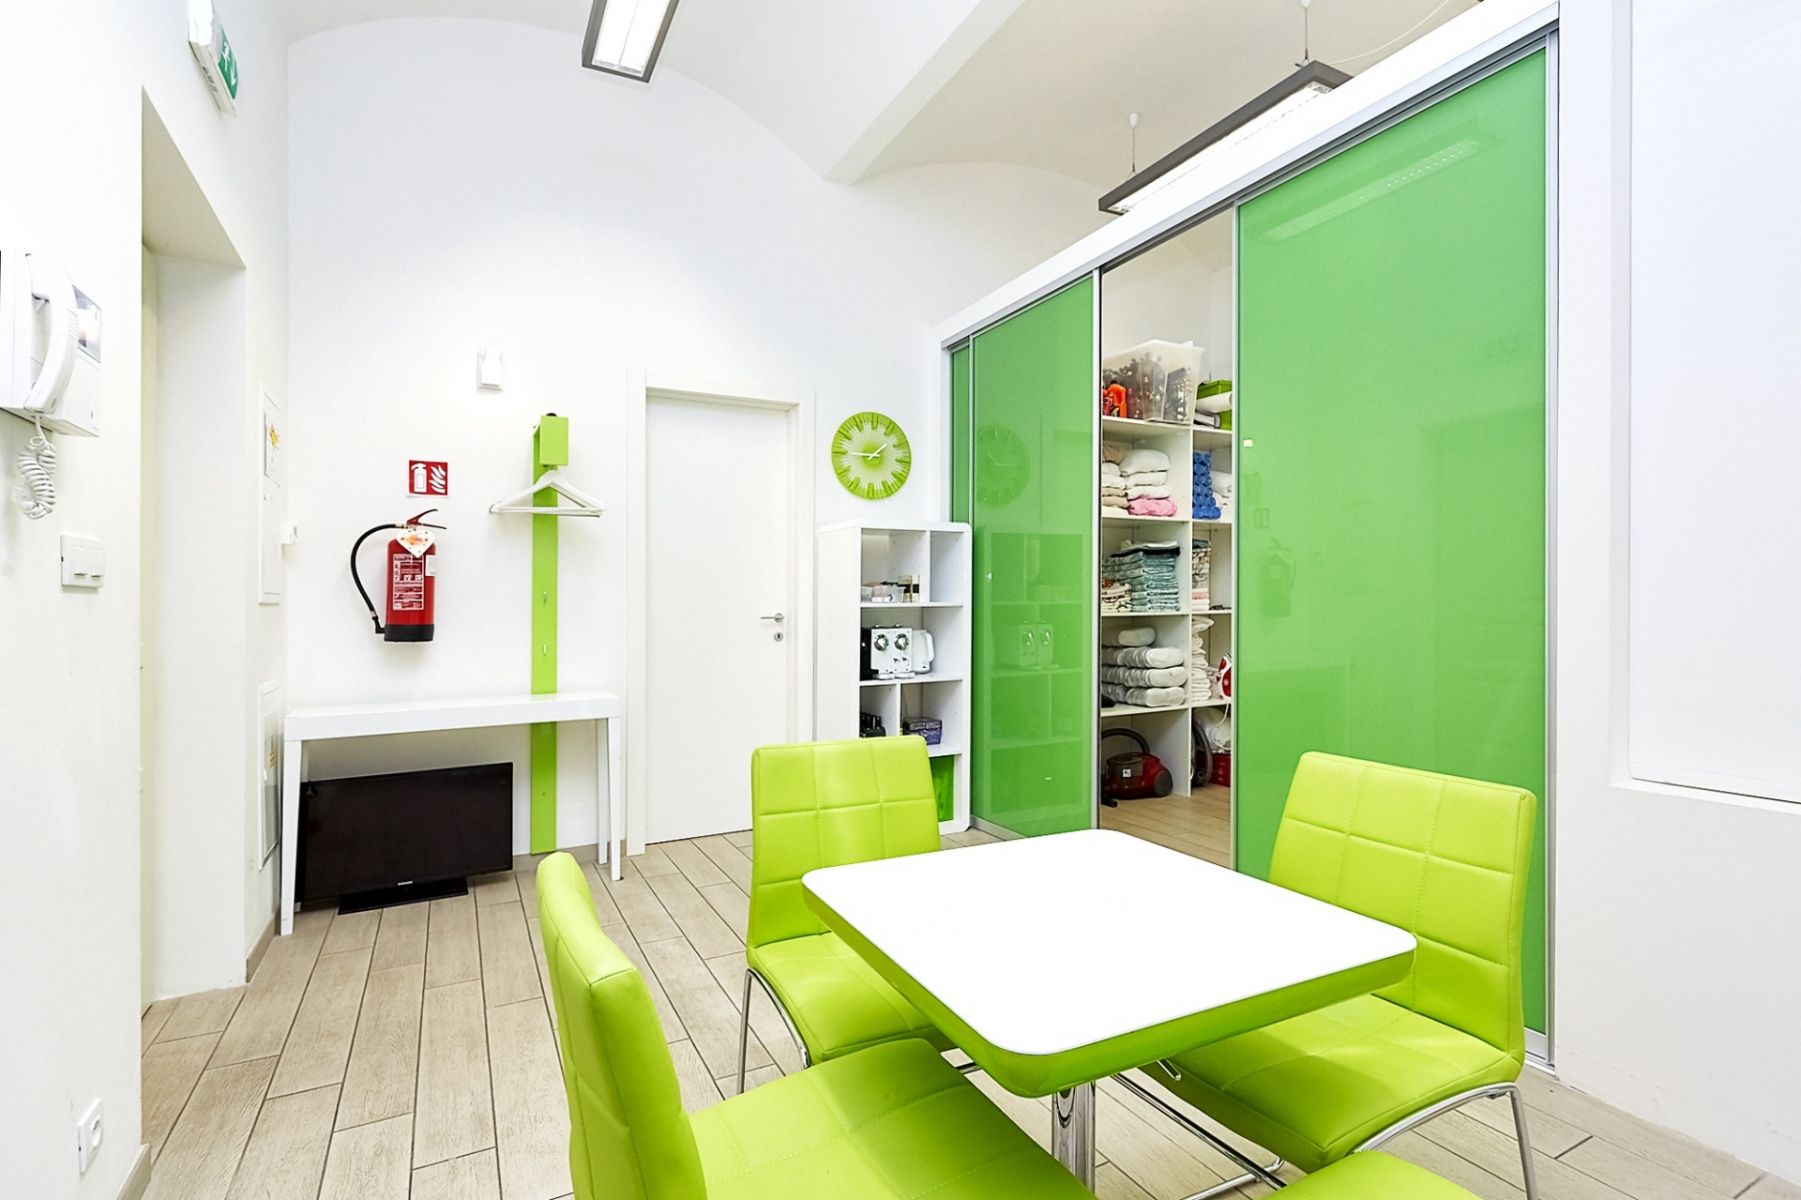 Samostatná  kancelář (37 m2) v projektu "La Corte", ul. Petrská, Praha 1, obrázek č. 3